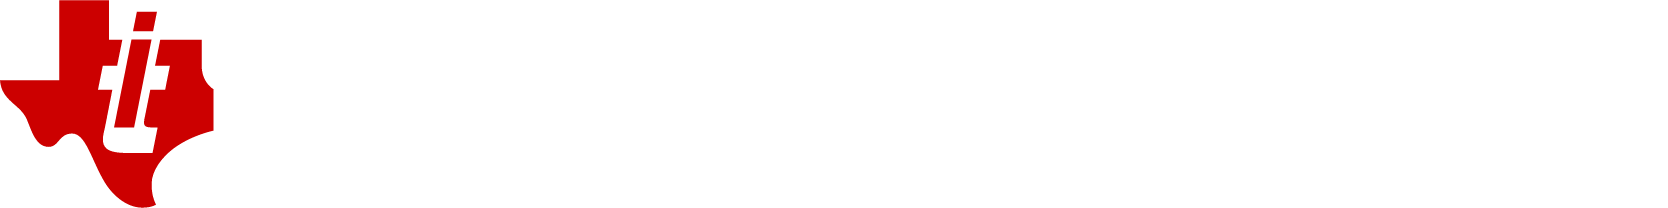 Texas Instruments logo grand pour les fonds sombres (PNG transparent)